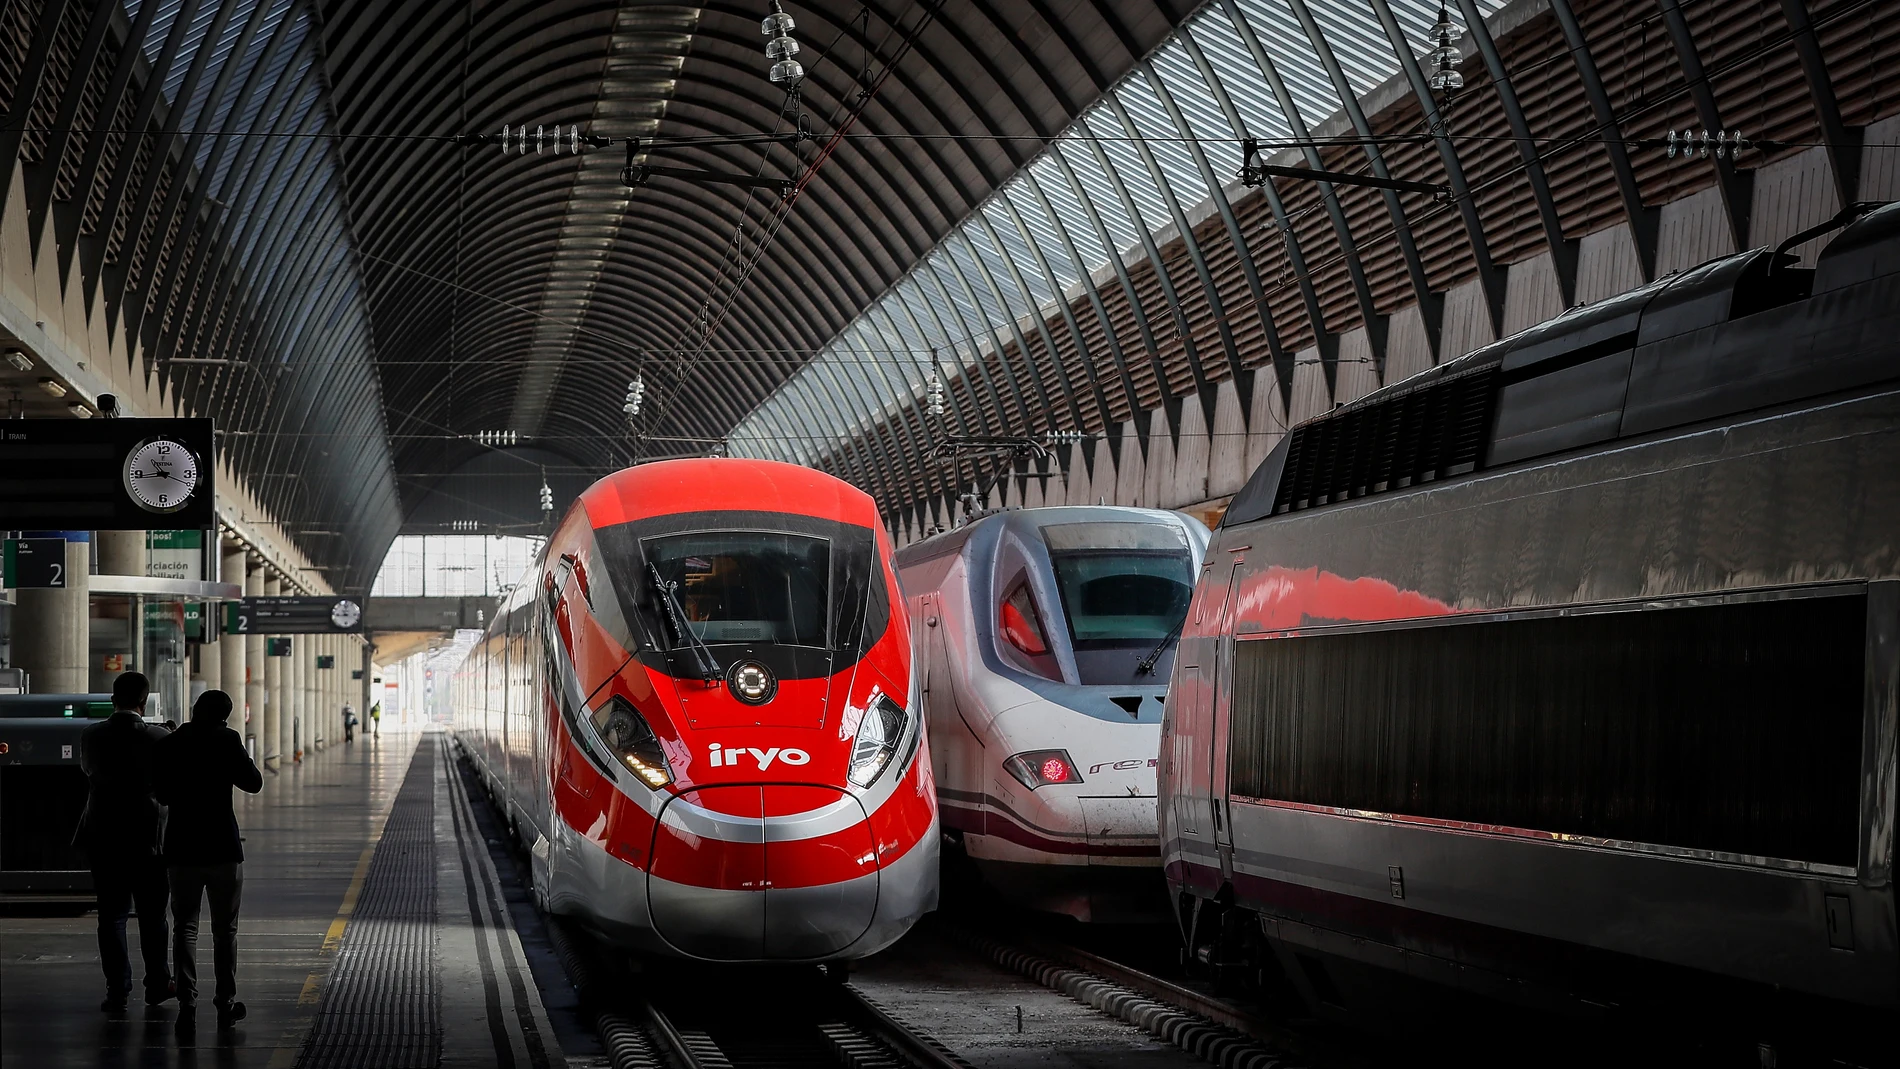 Tren de alta velocidad bautizado como "Flecha roja" hoy viernes en la Estación de Santa Justa